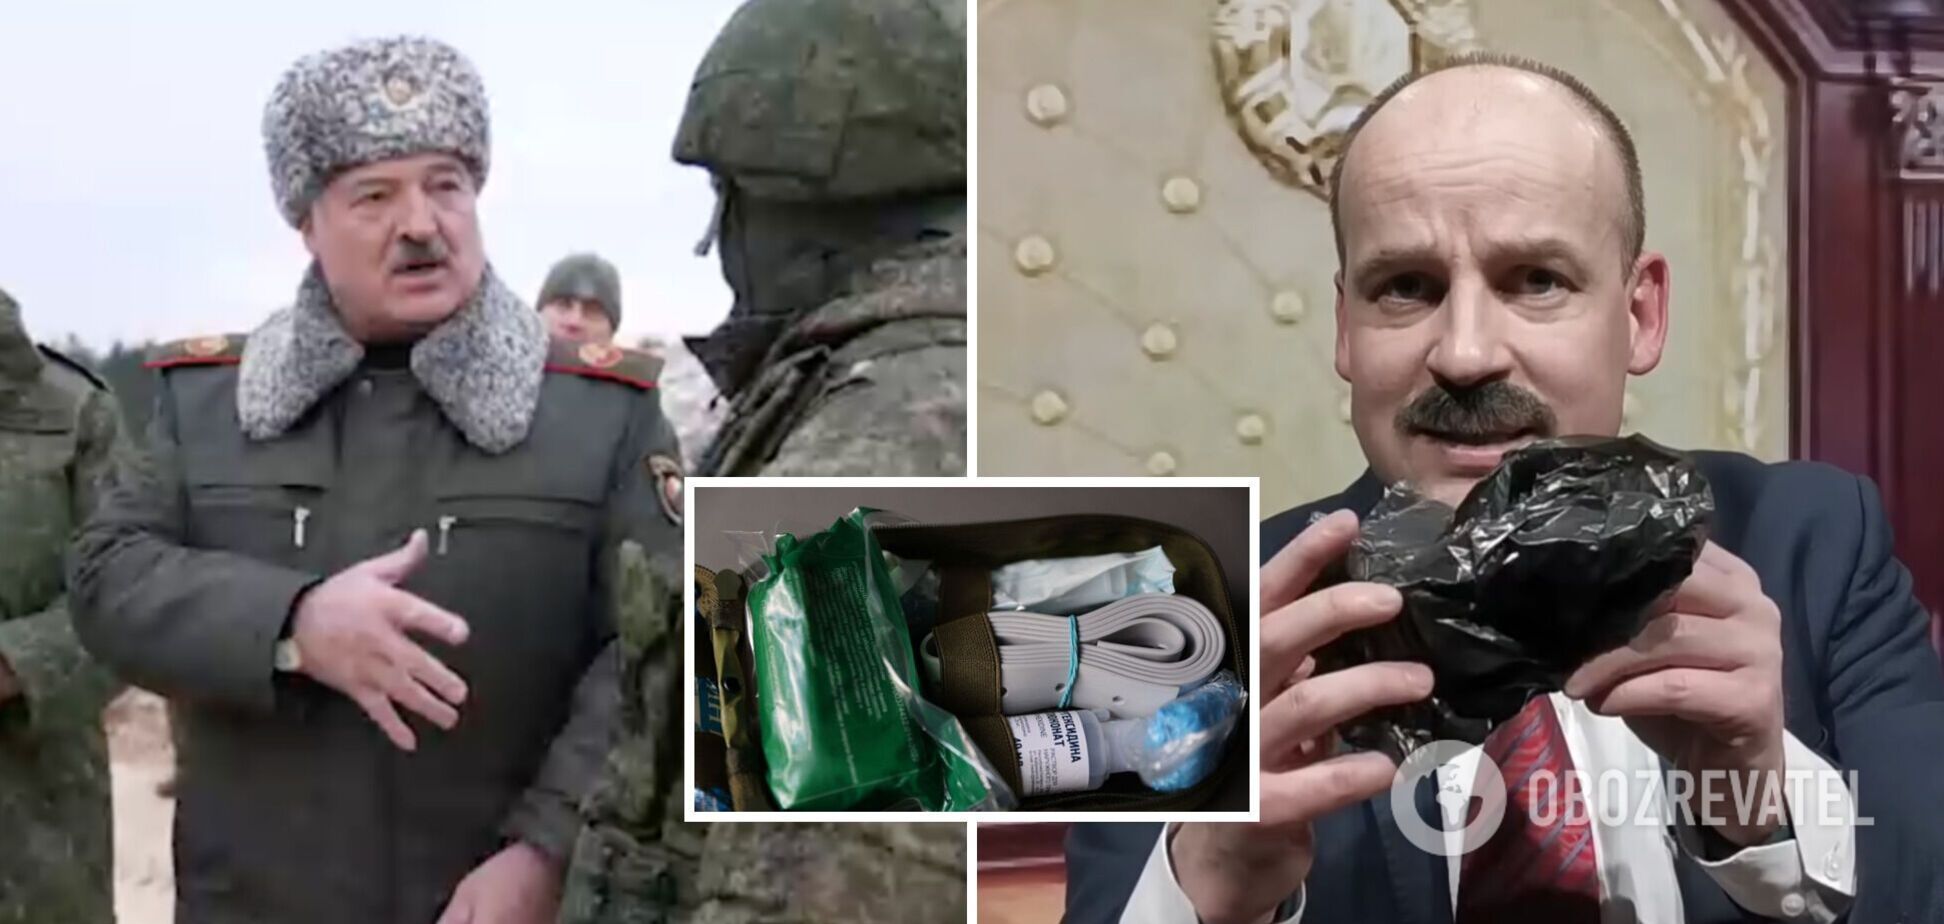 Иконка, подорожник и презерватив: Великий из 'Квартала' показал содержимое беларуской аптечки, которая 'лучше натовской'